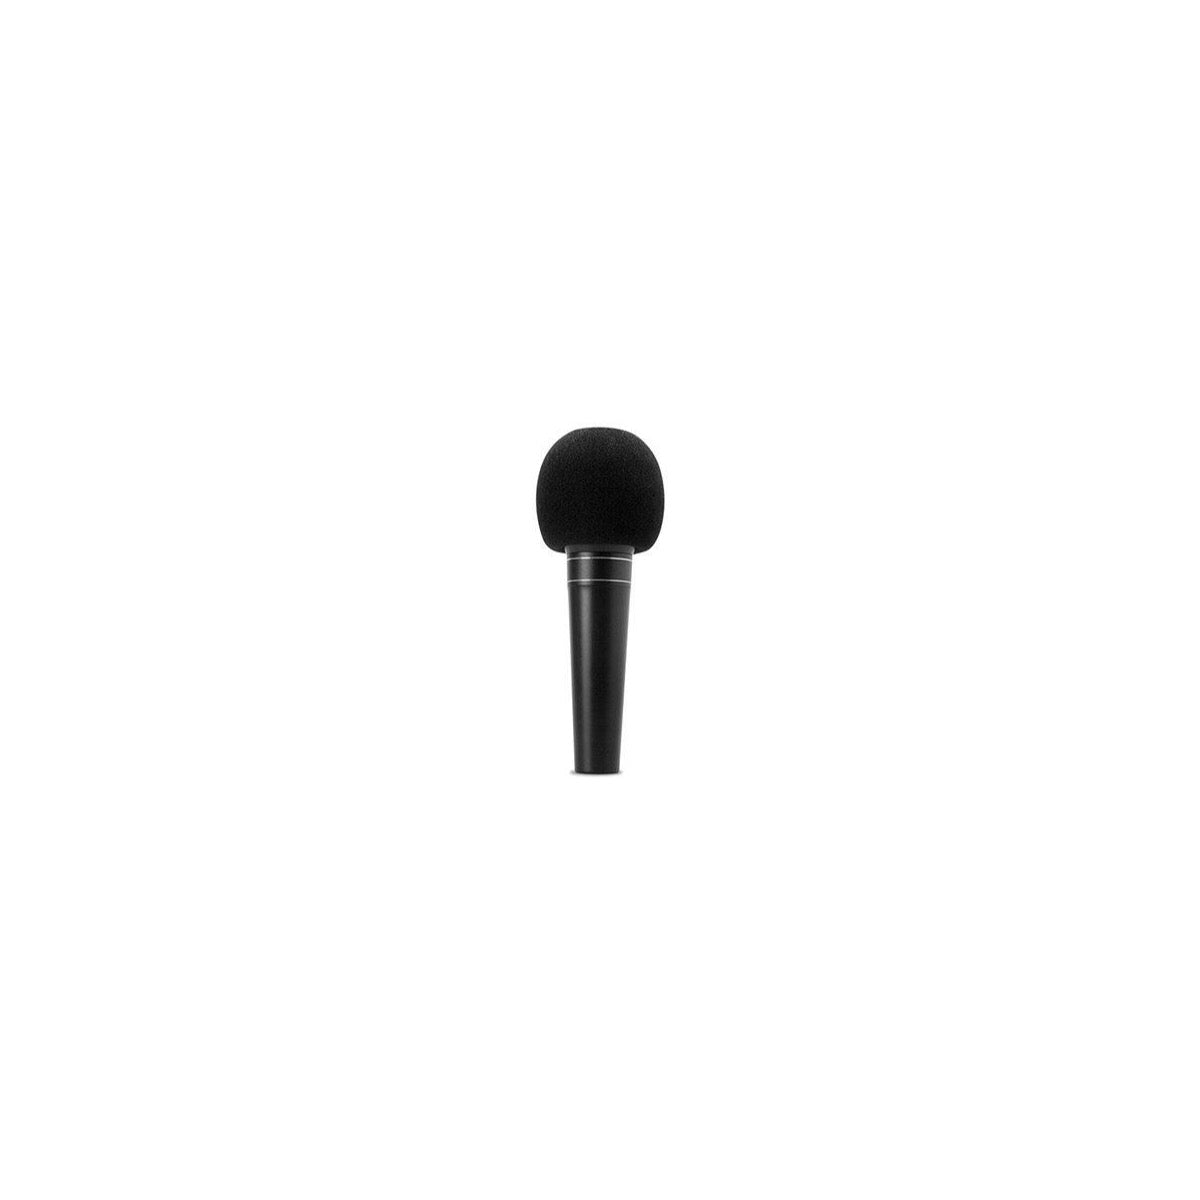 Hosa MWS-225 Microphone Windscreen, Black